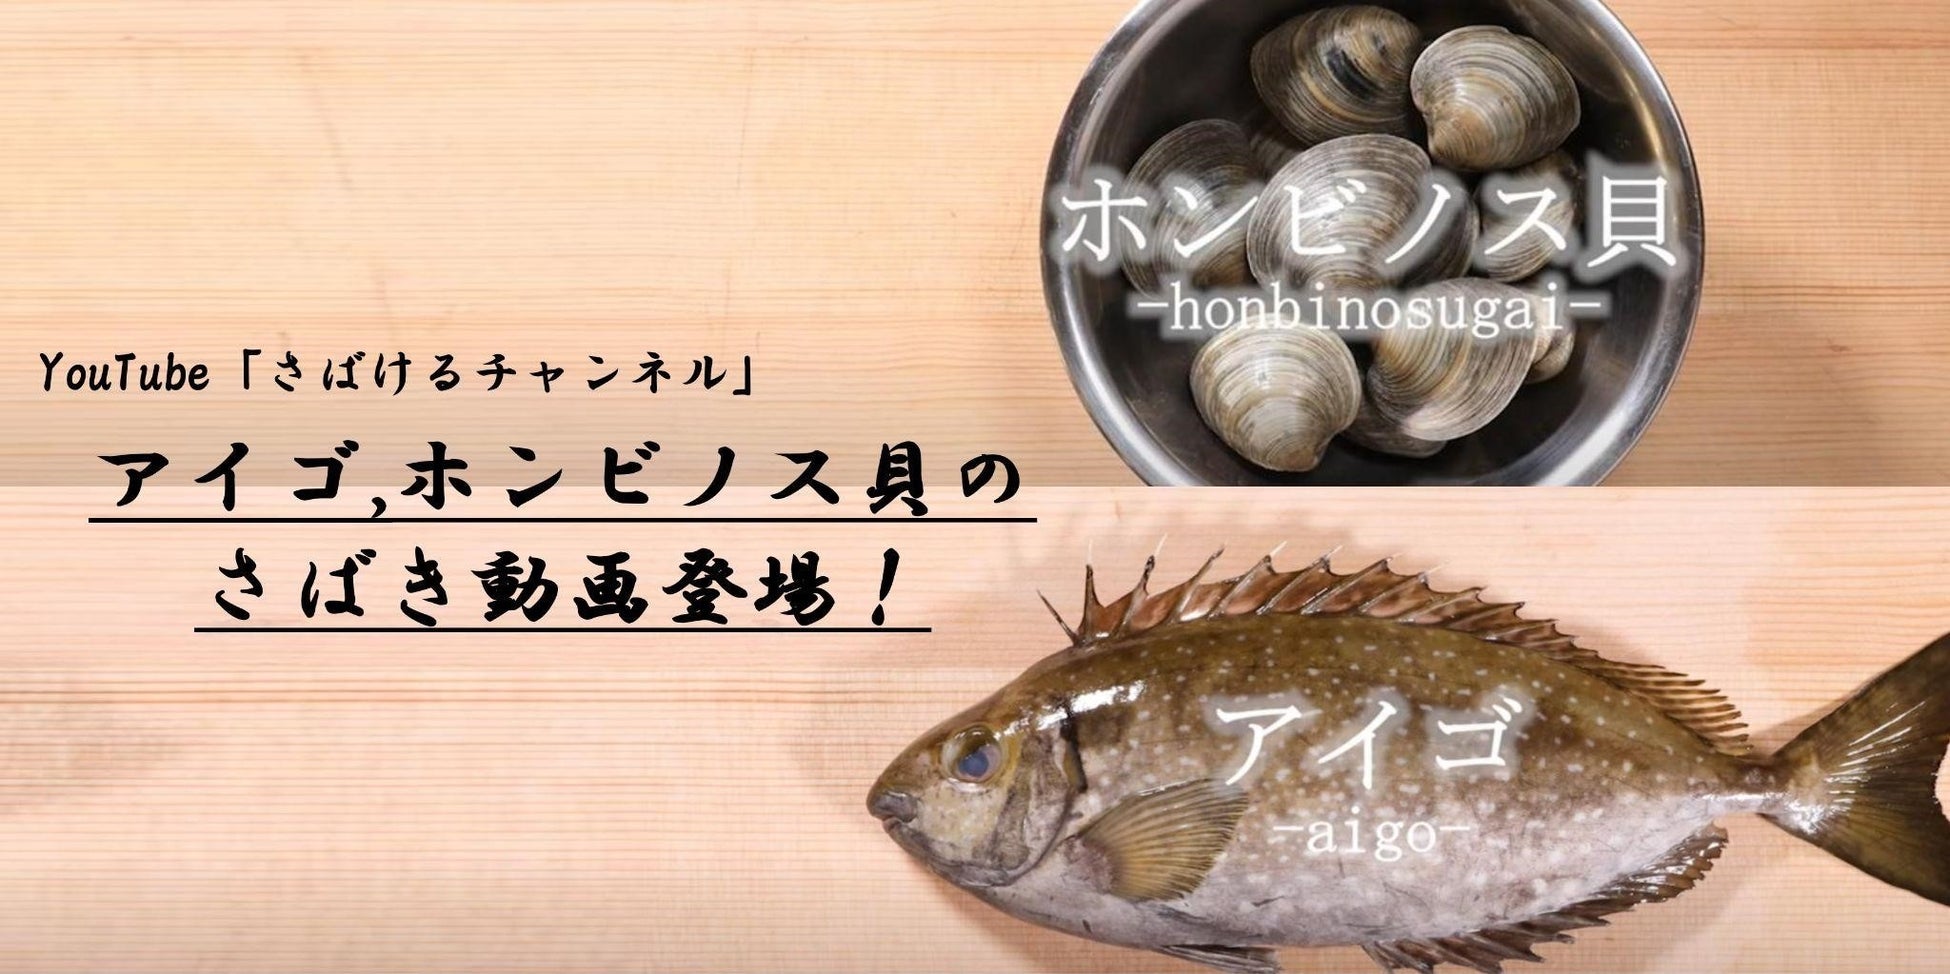 日本初⁉ サバの三枚おろしを講談に。講釈師が魚のさばきを解説する初の試み！ナレーションバージョン新登場のサブ画像3